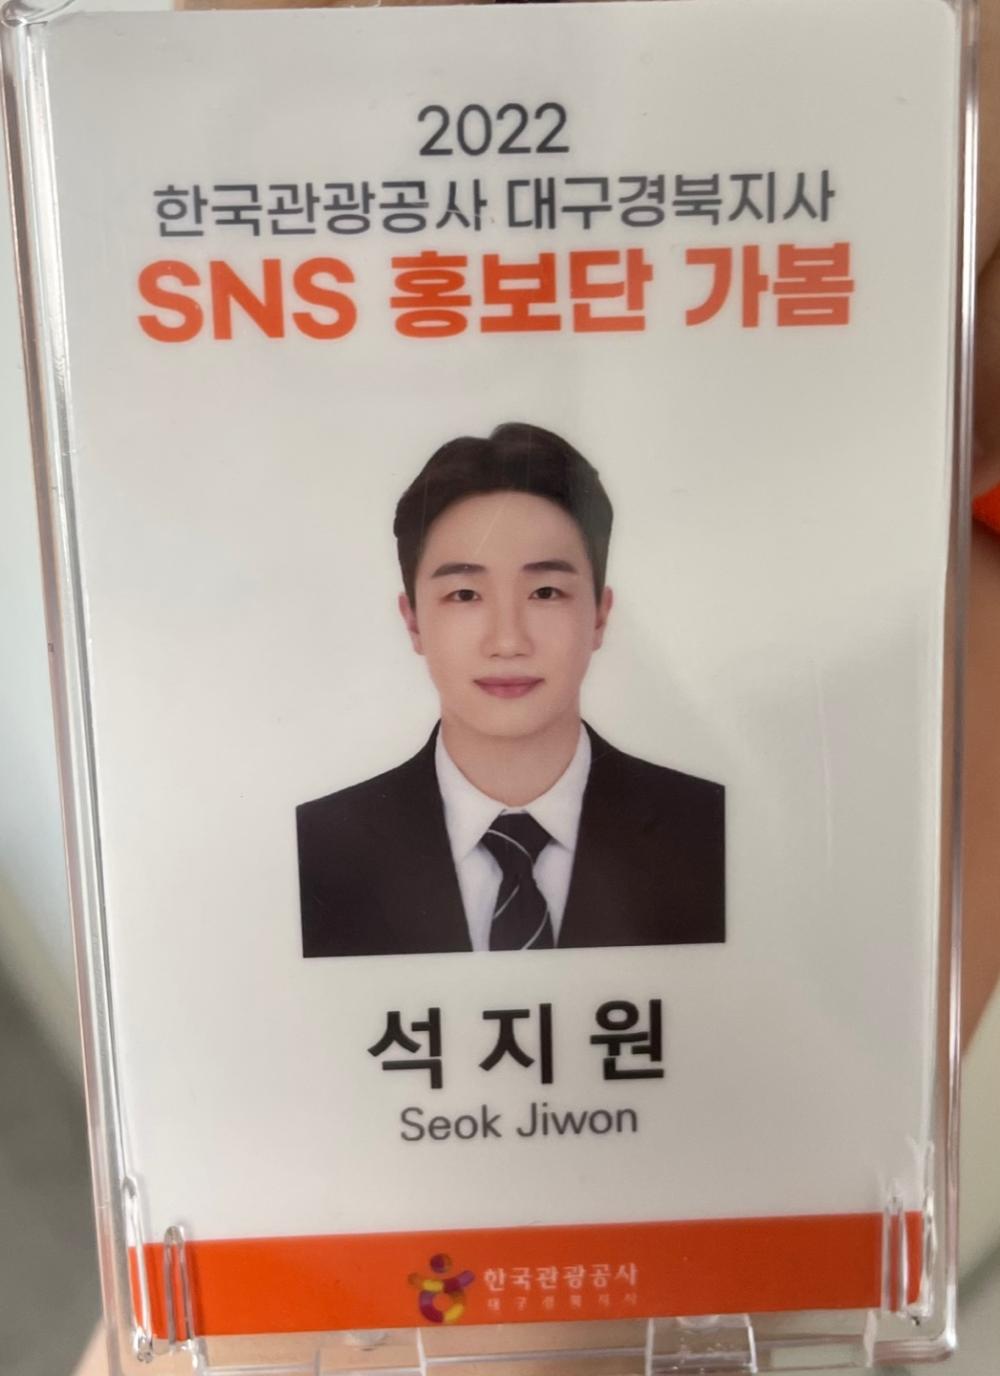 항공서비스학전공 석지원, 한국관광공사 SNS기자단으로 활동하다! 사진3